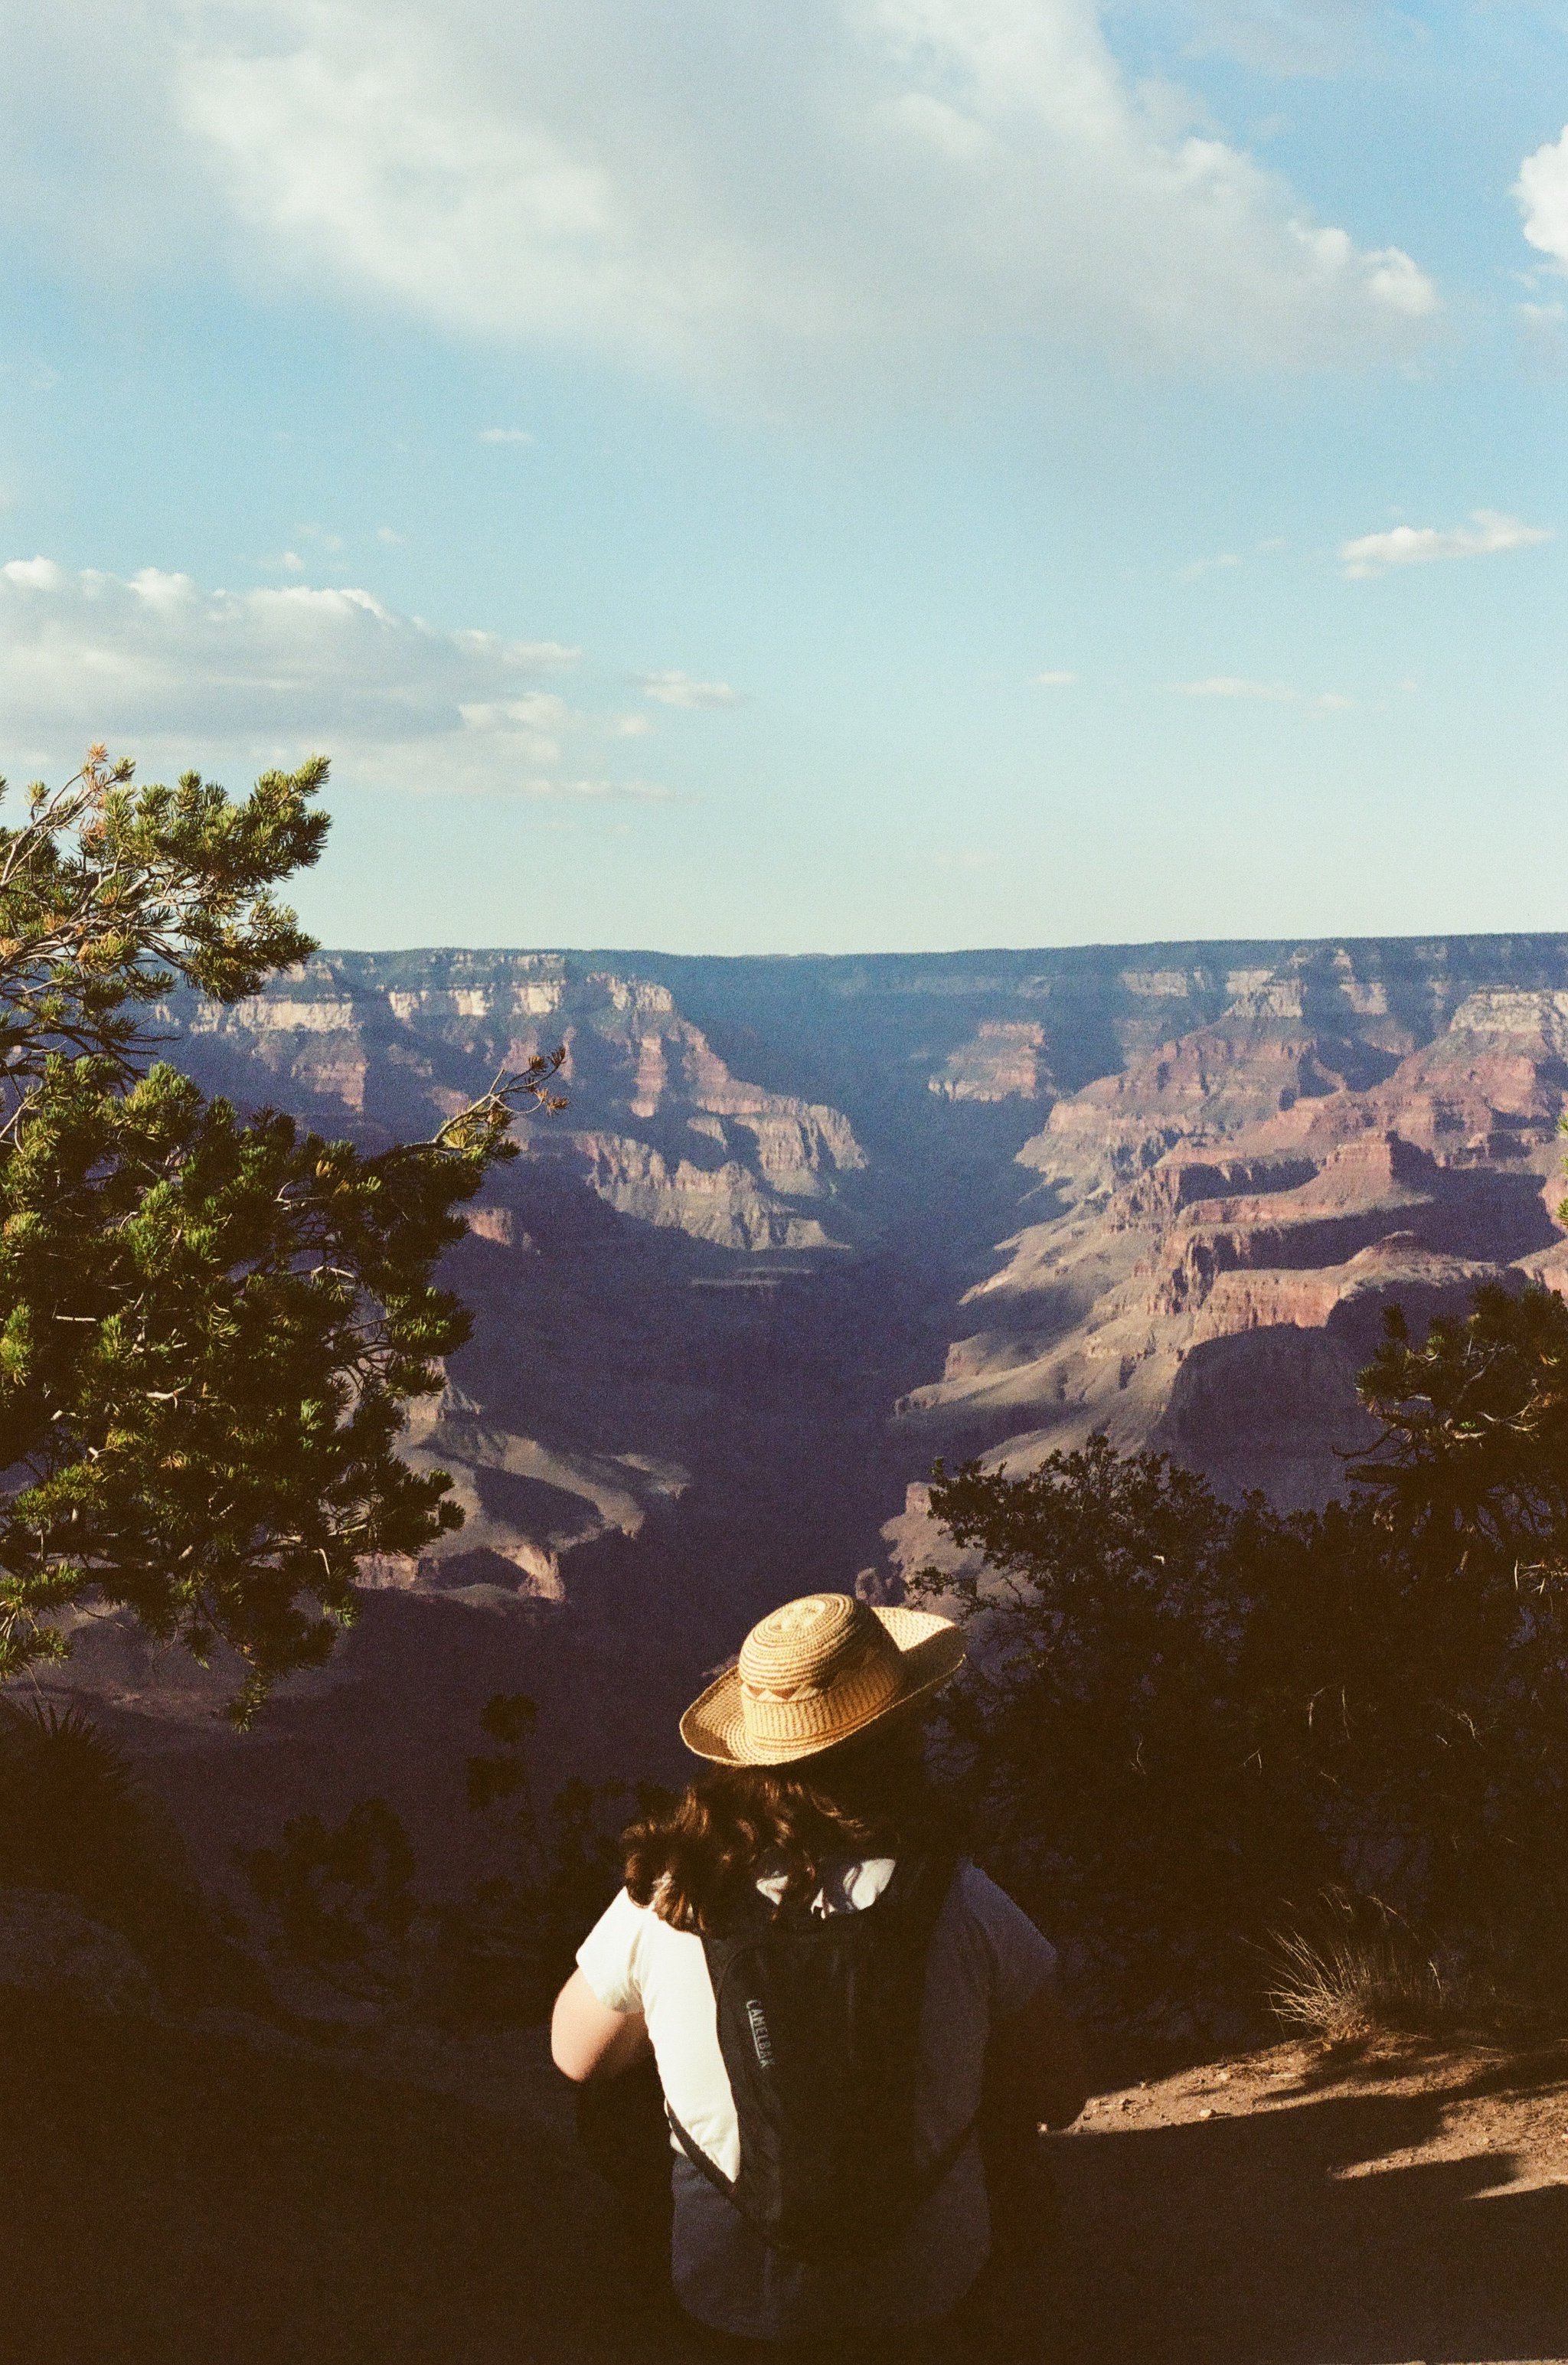 Chris at Grand Canyon